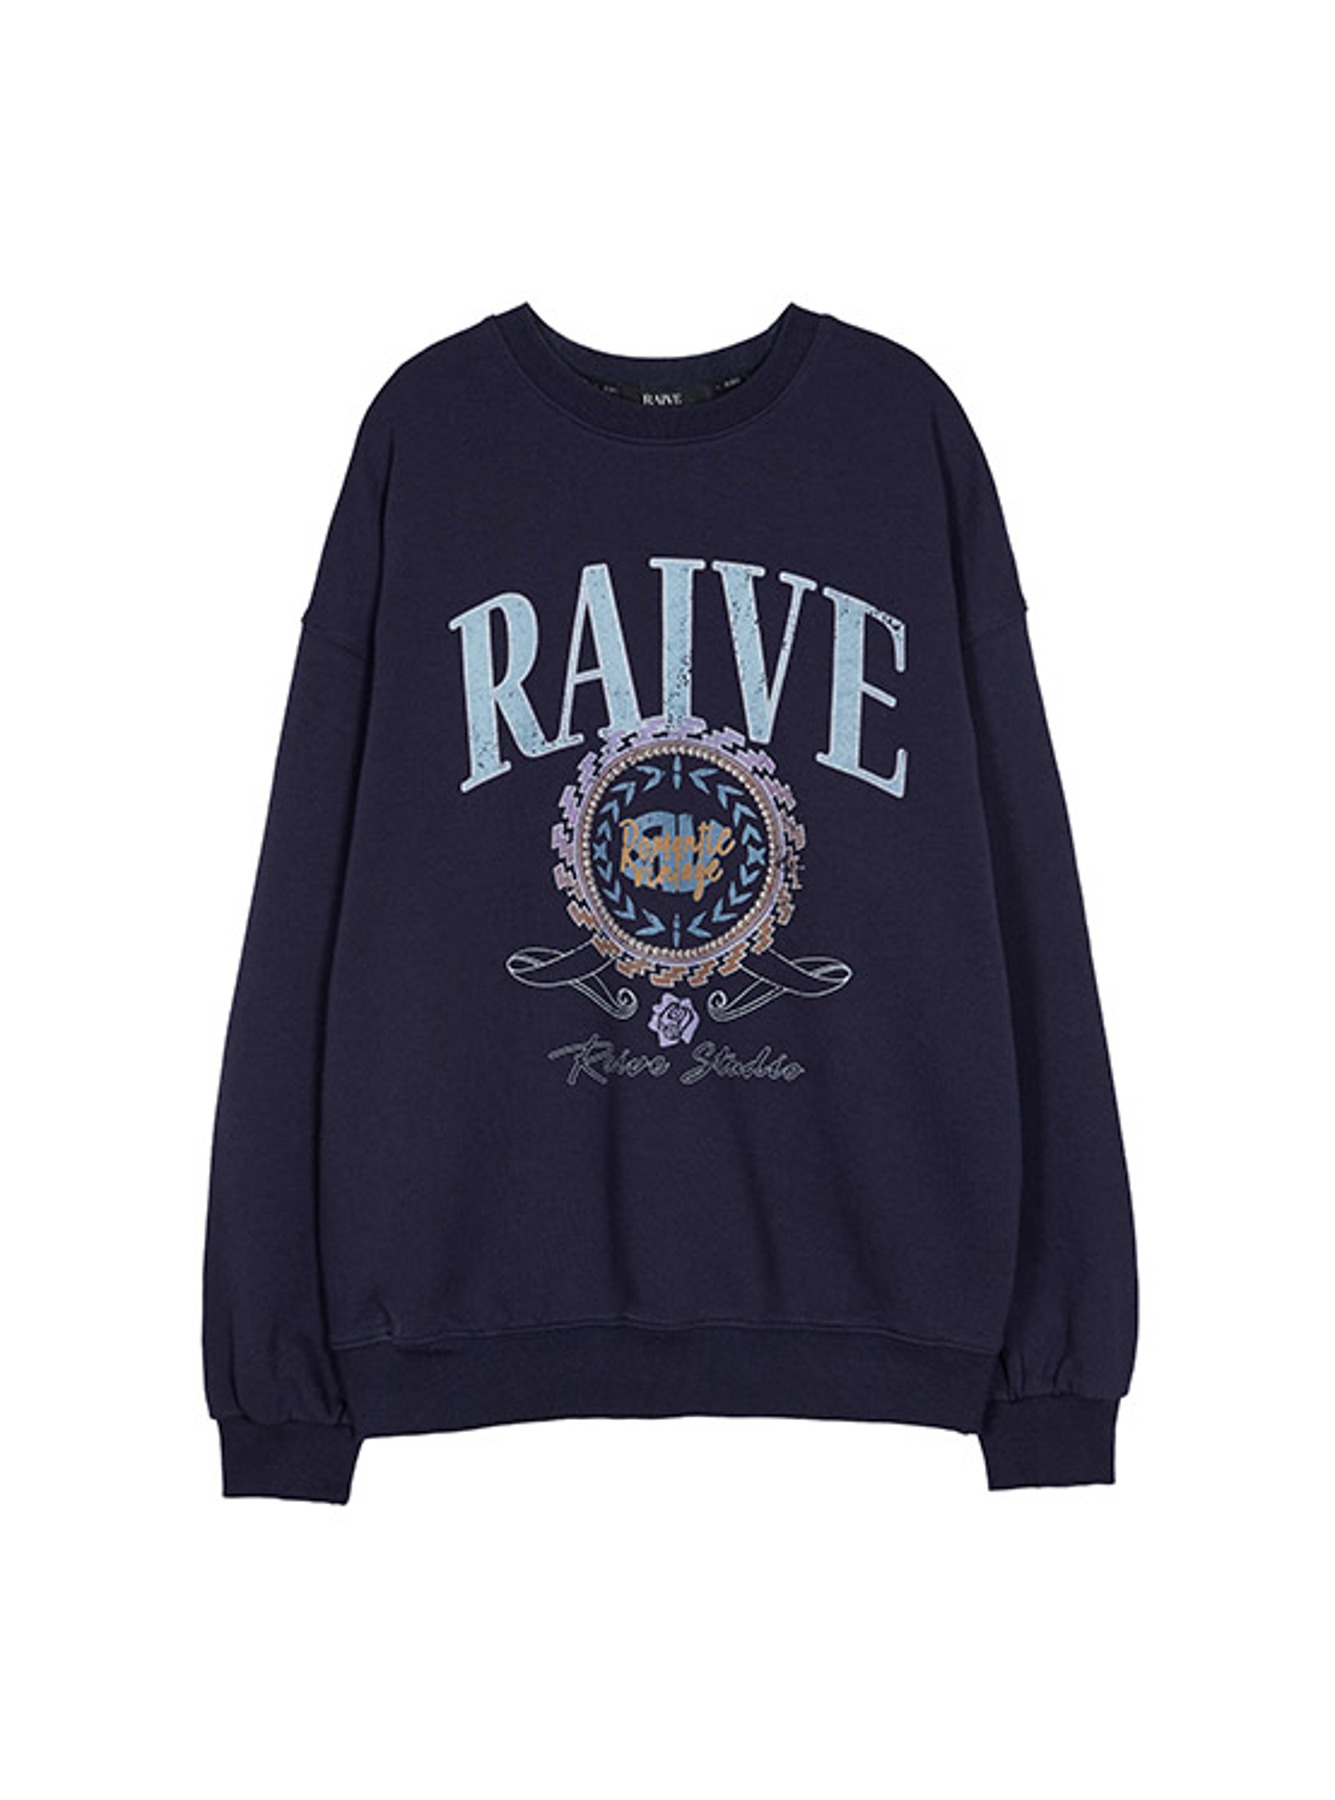 RAIVE Sweatshirt in Navy VW2AE331-23